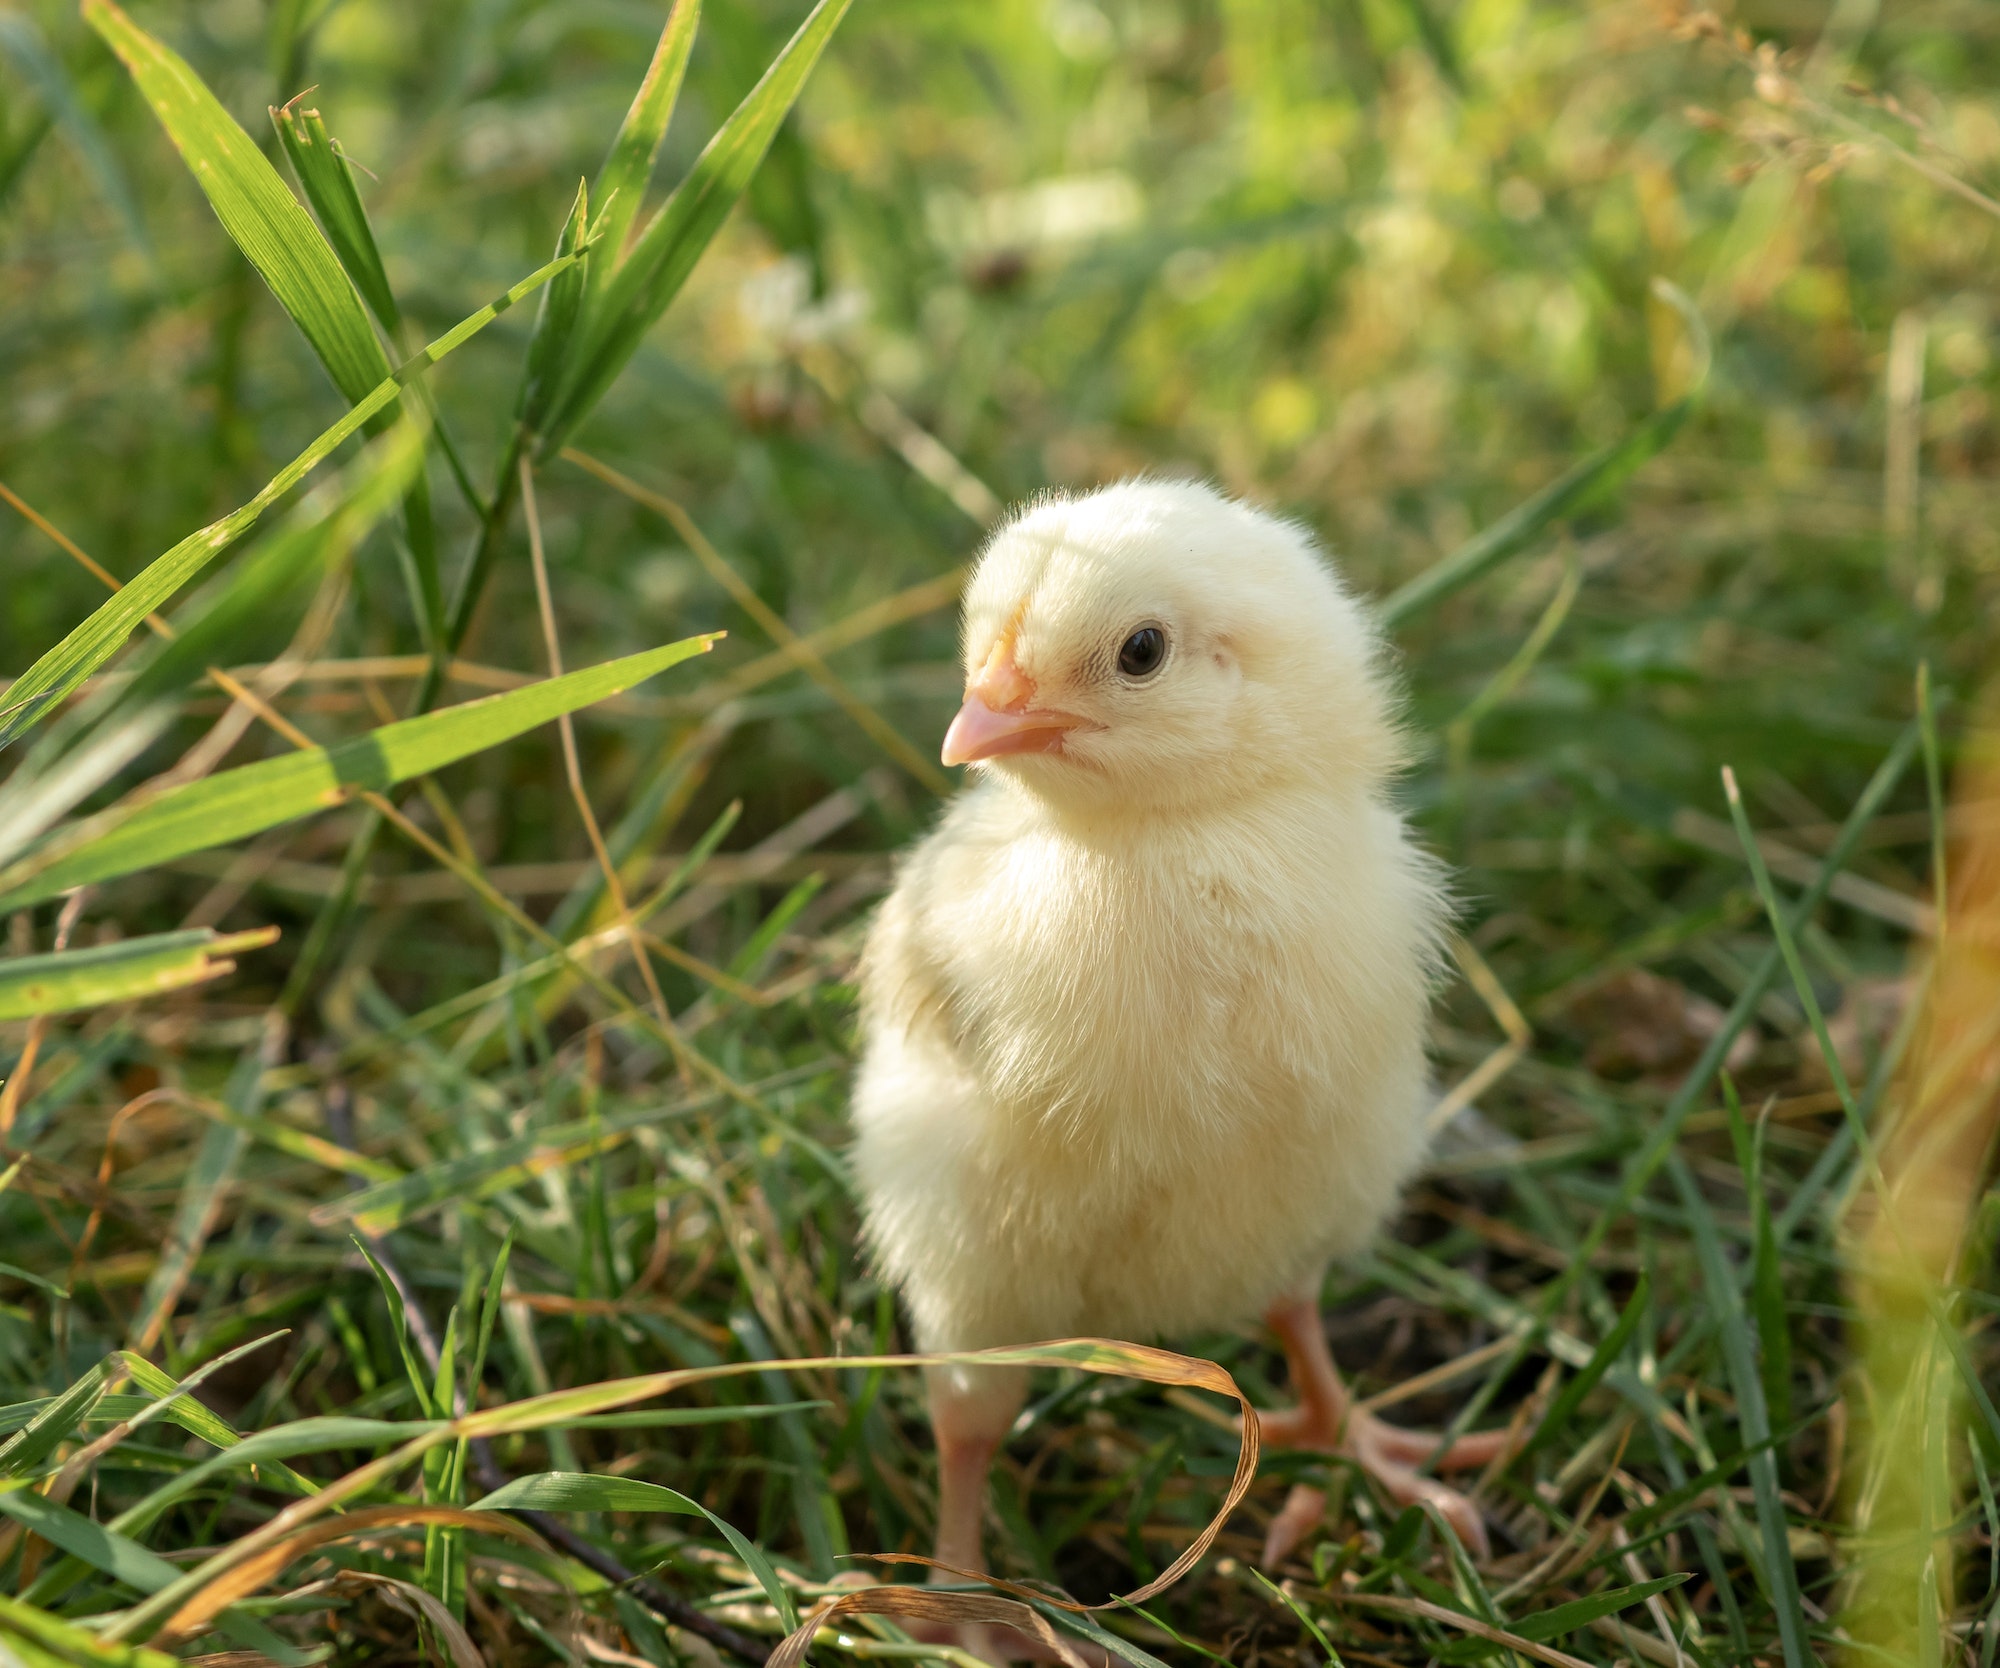 Little yellow chick on fresh green grass